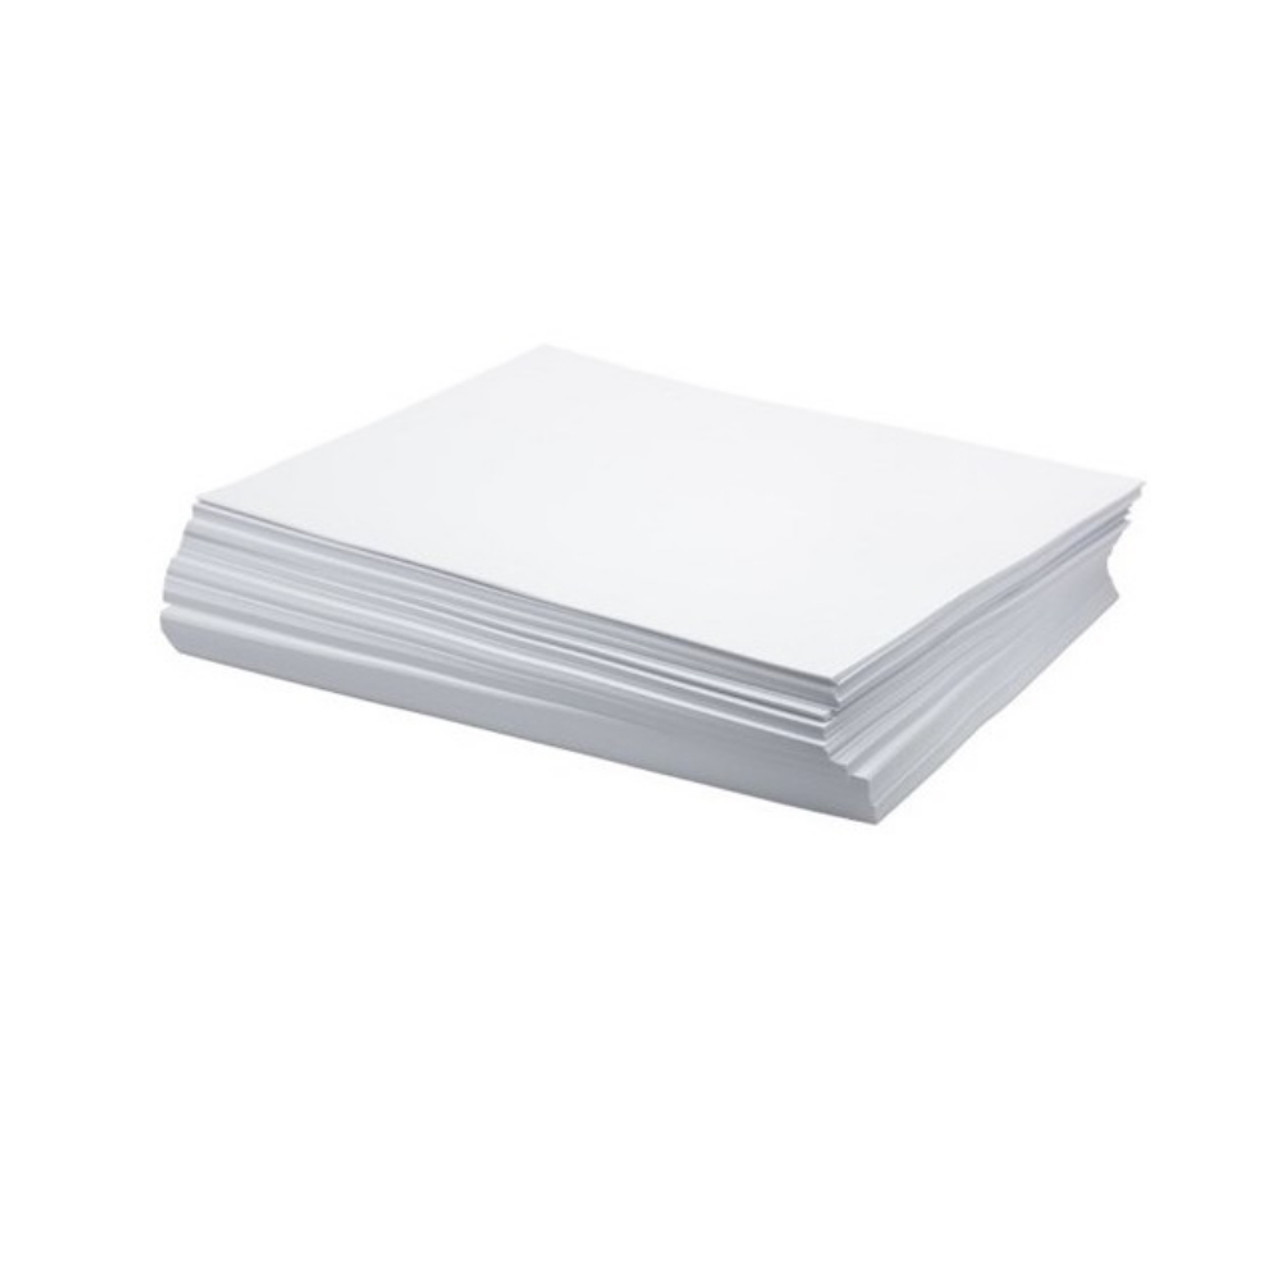 8-1/2 x 11 ACID-FREE Tissue Paper